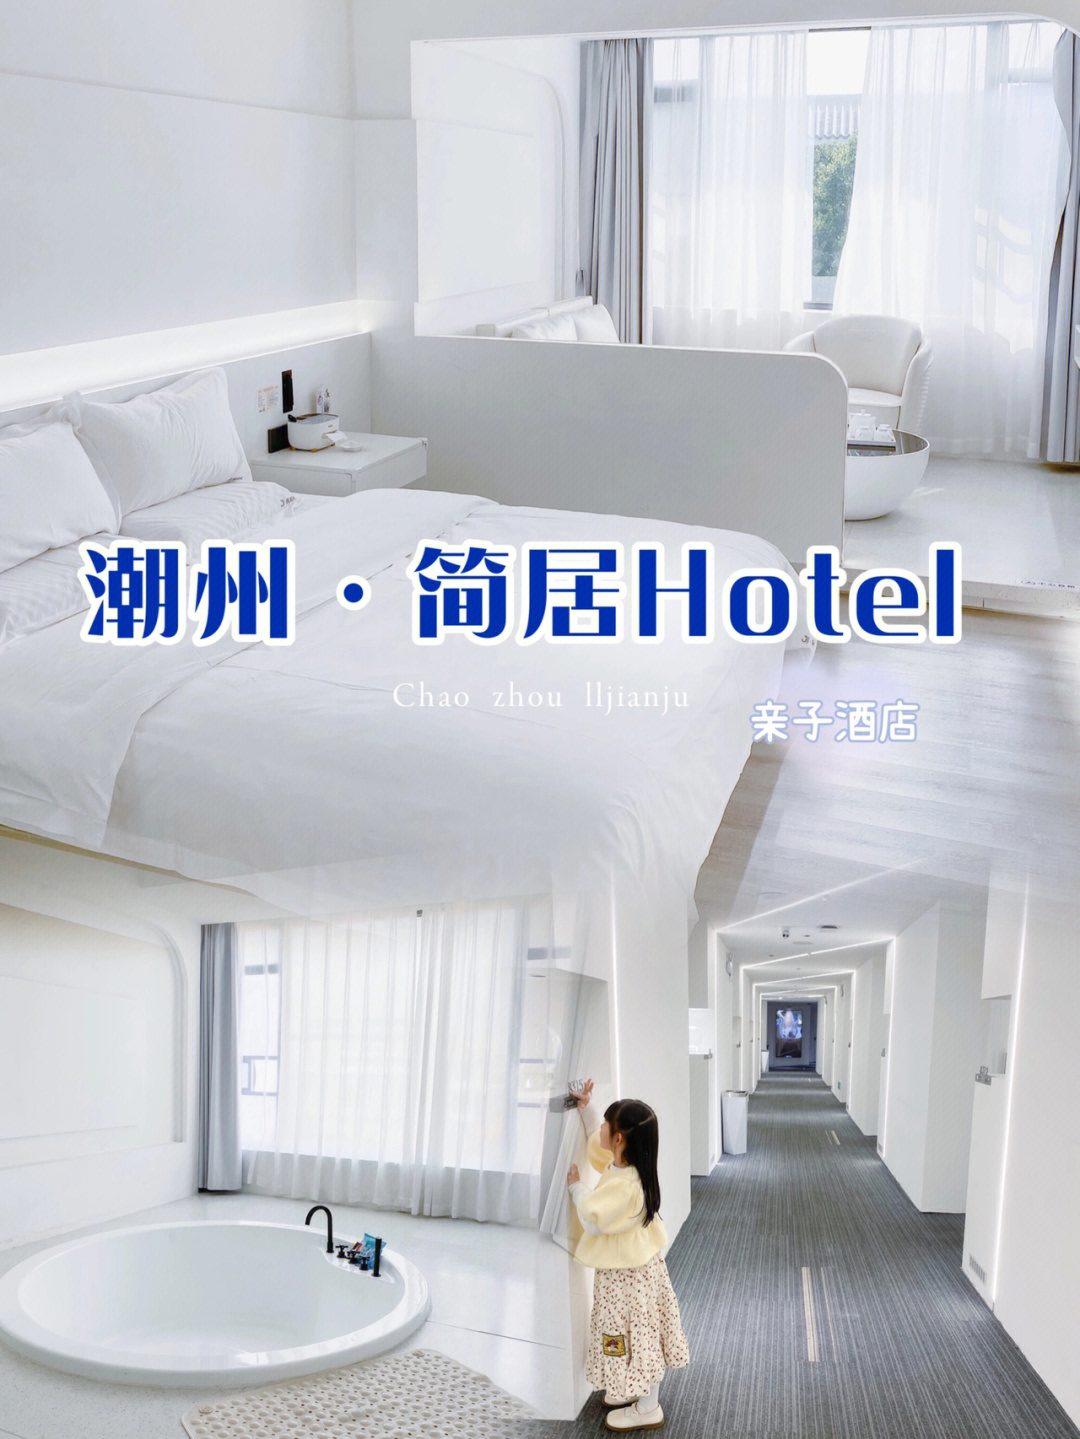 潮州鼎福大酒店7楼图片